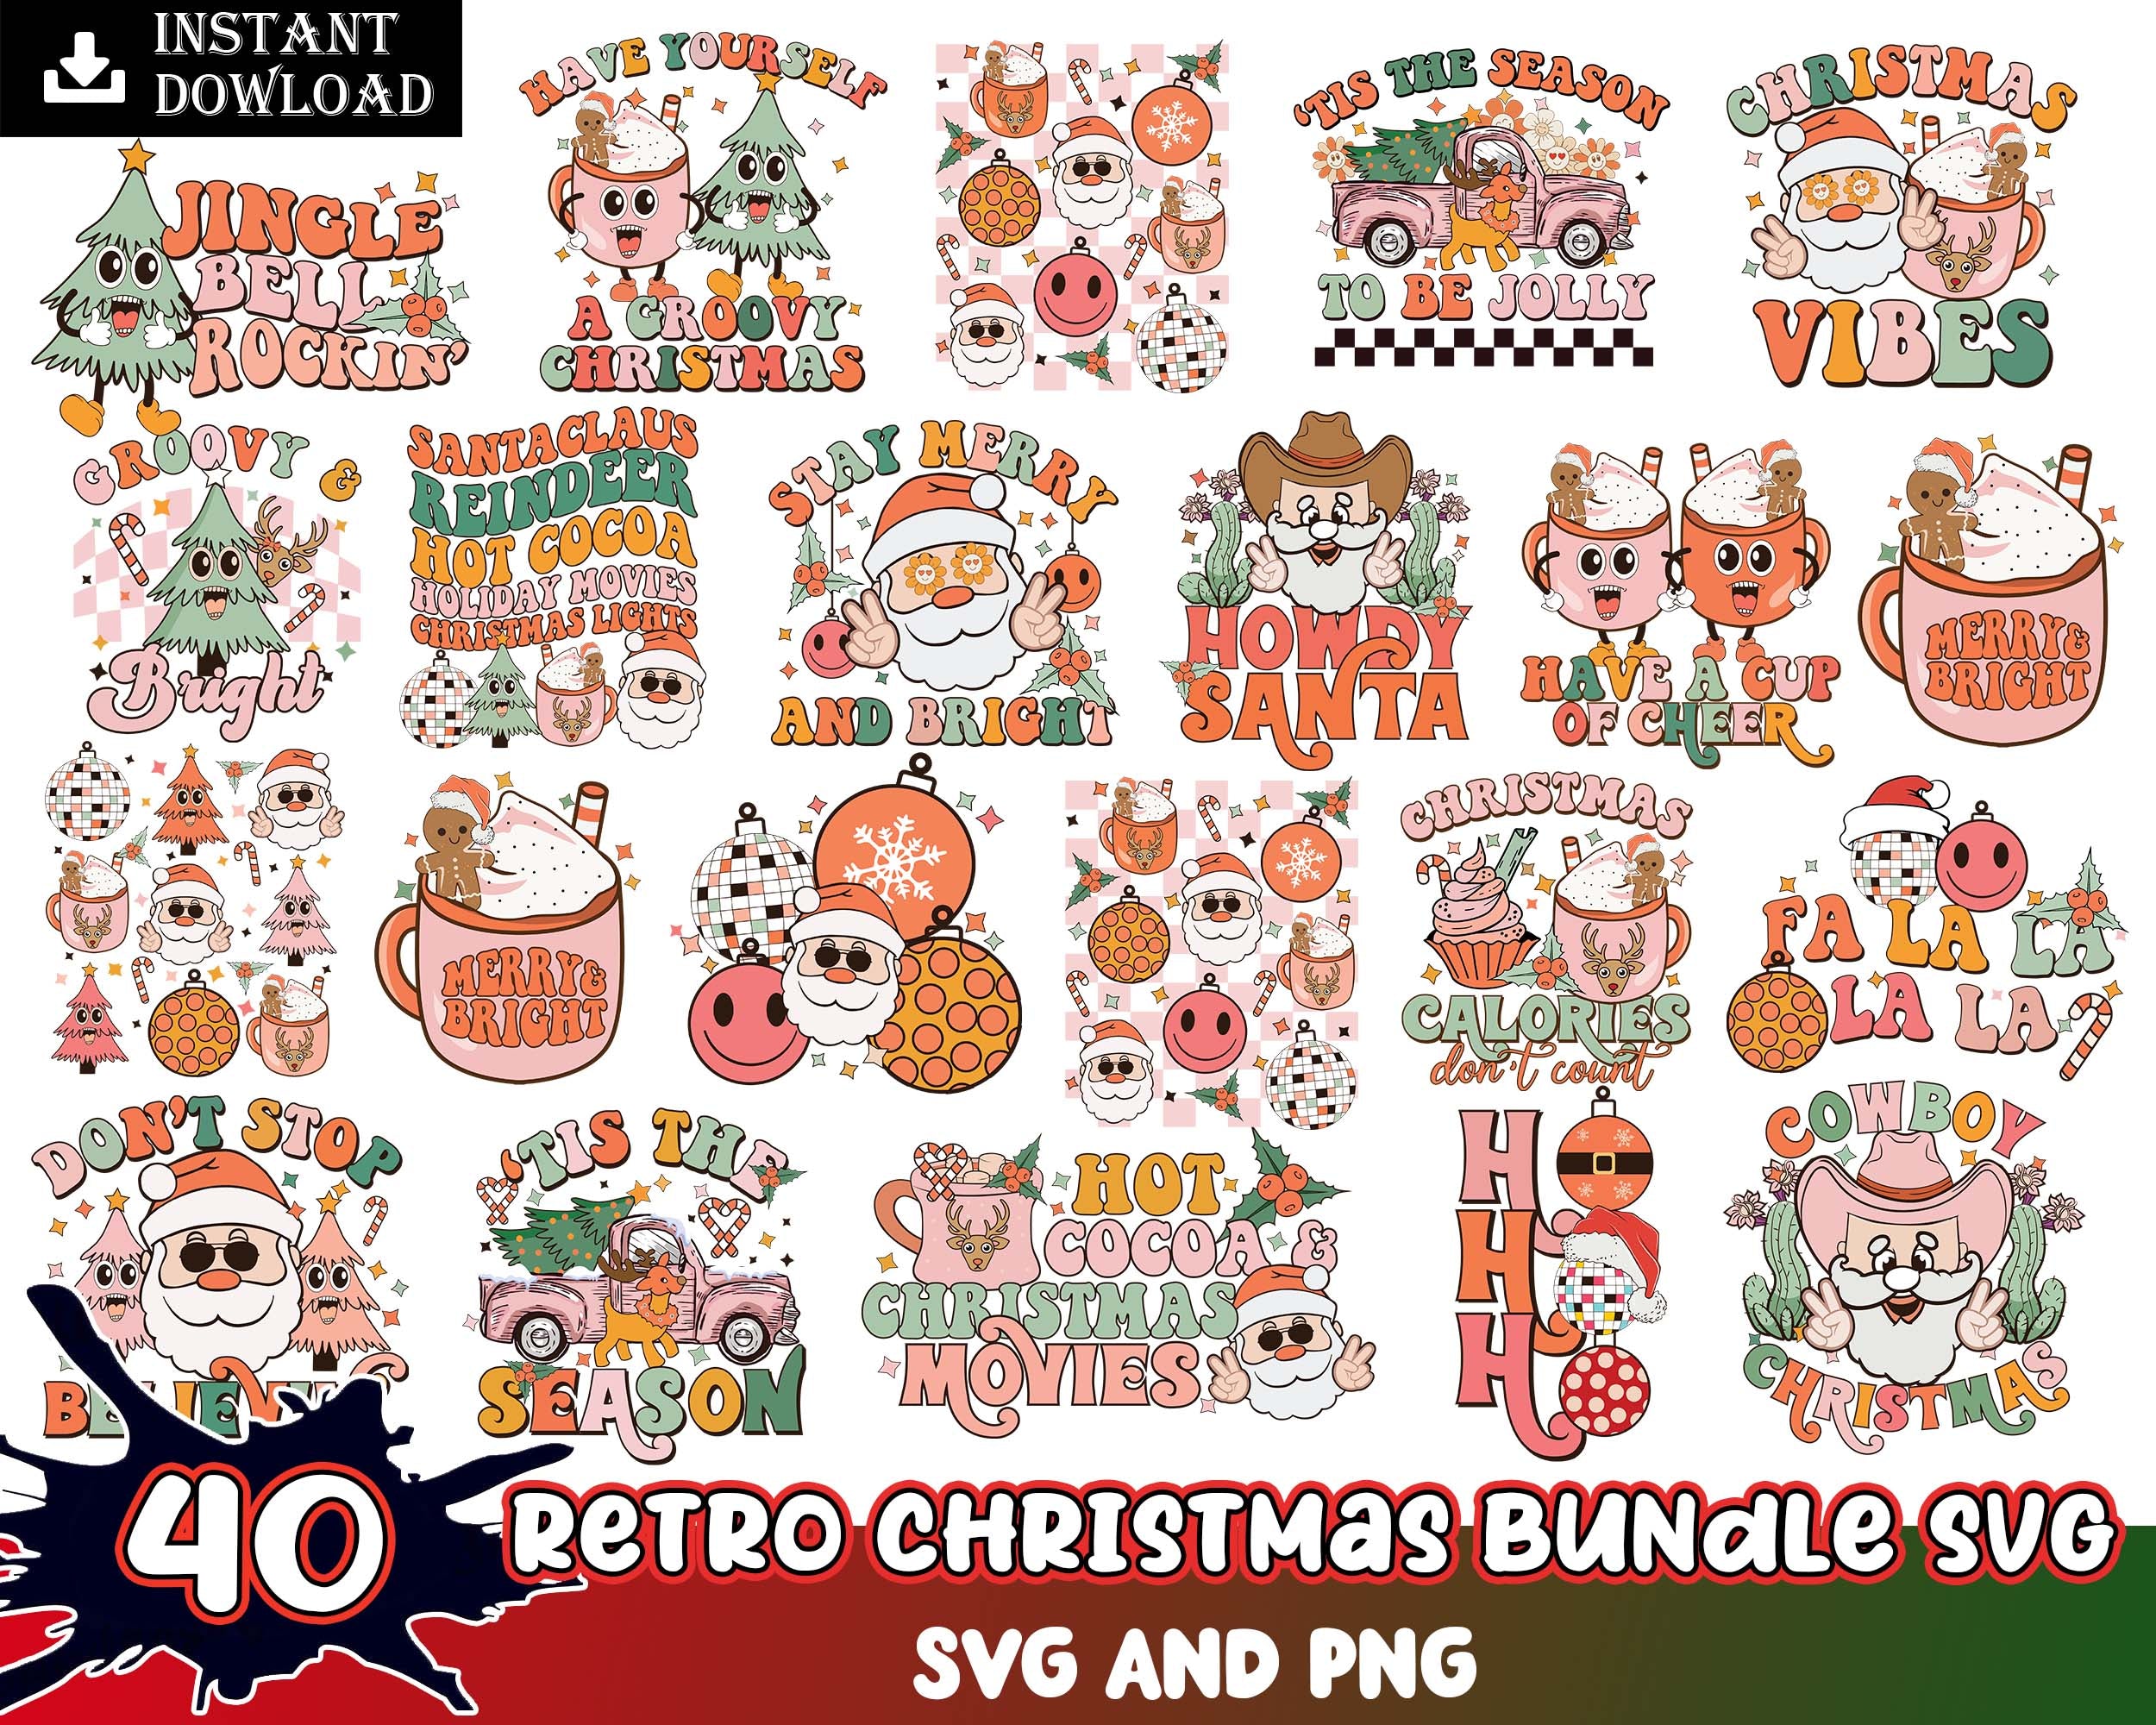 40 Retro Christmas bundle, Christmas SVG PNG bundle, Christmas digital bundle, Designs bundle, Digital files, CRM02112201